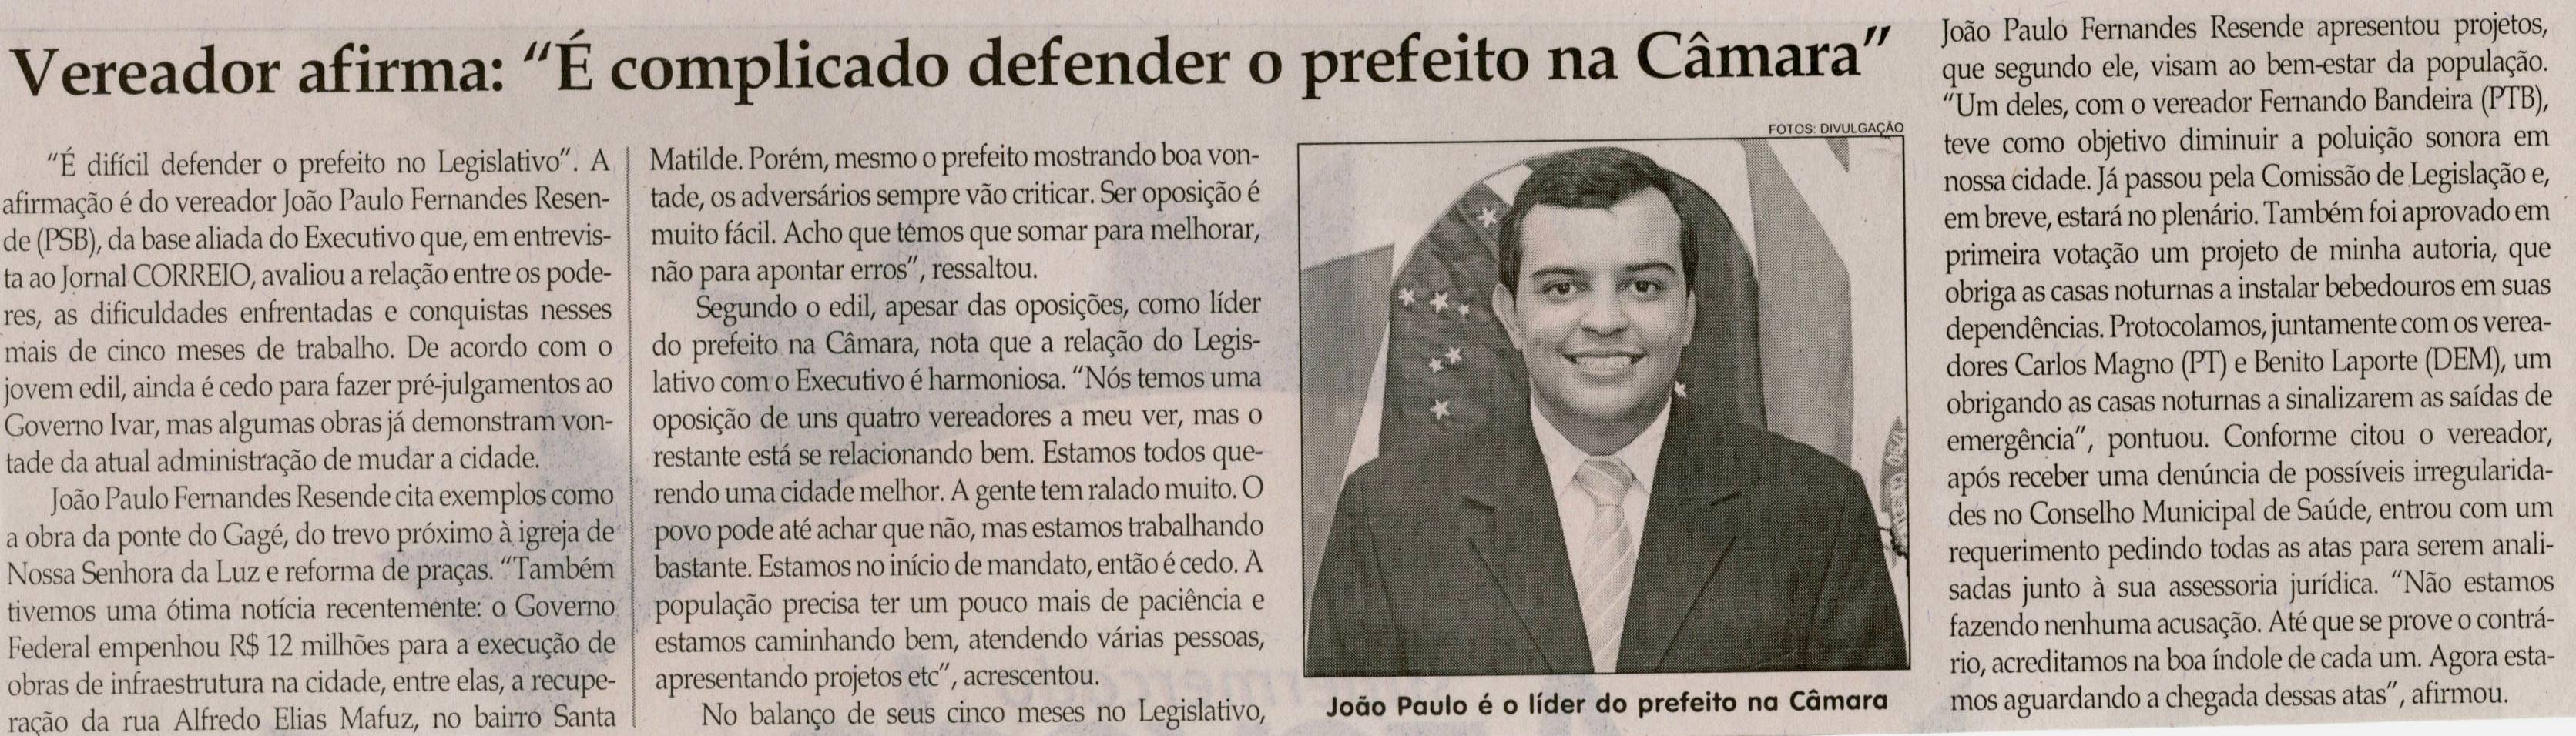 Vereador afirma: "É complicado defender o prefeito na Câmara". Jornal Correio da Cidade, Conselheiro Lafaiete, 08 jun. 2013, p. 06.